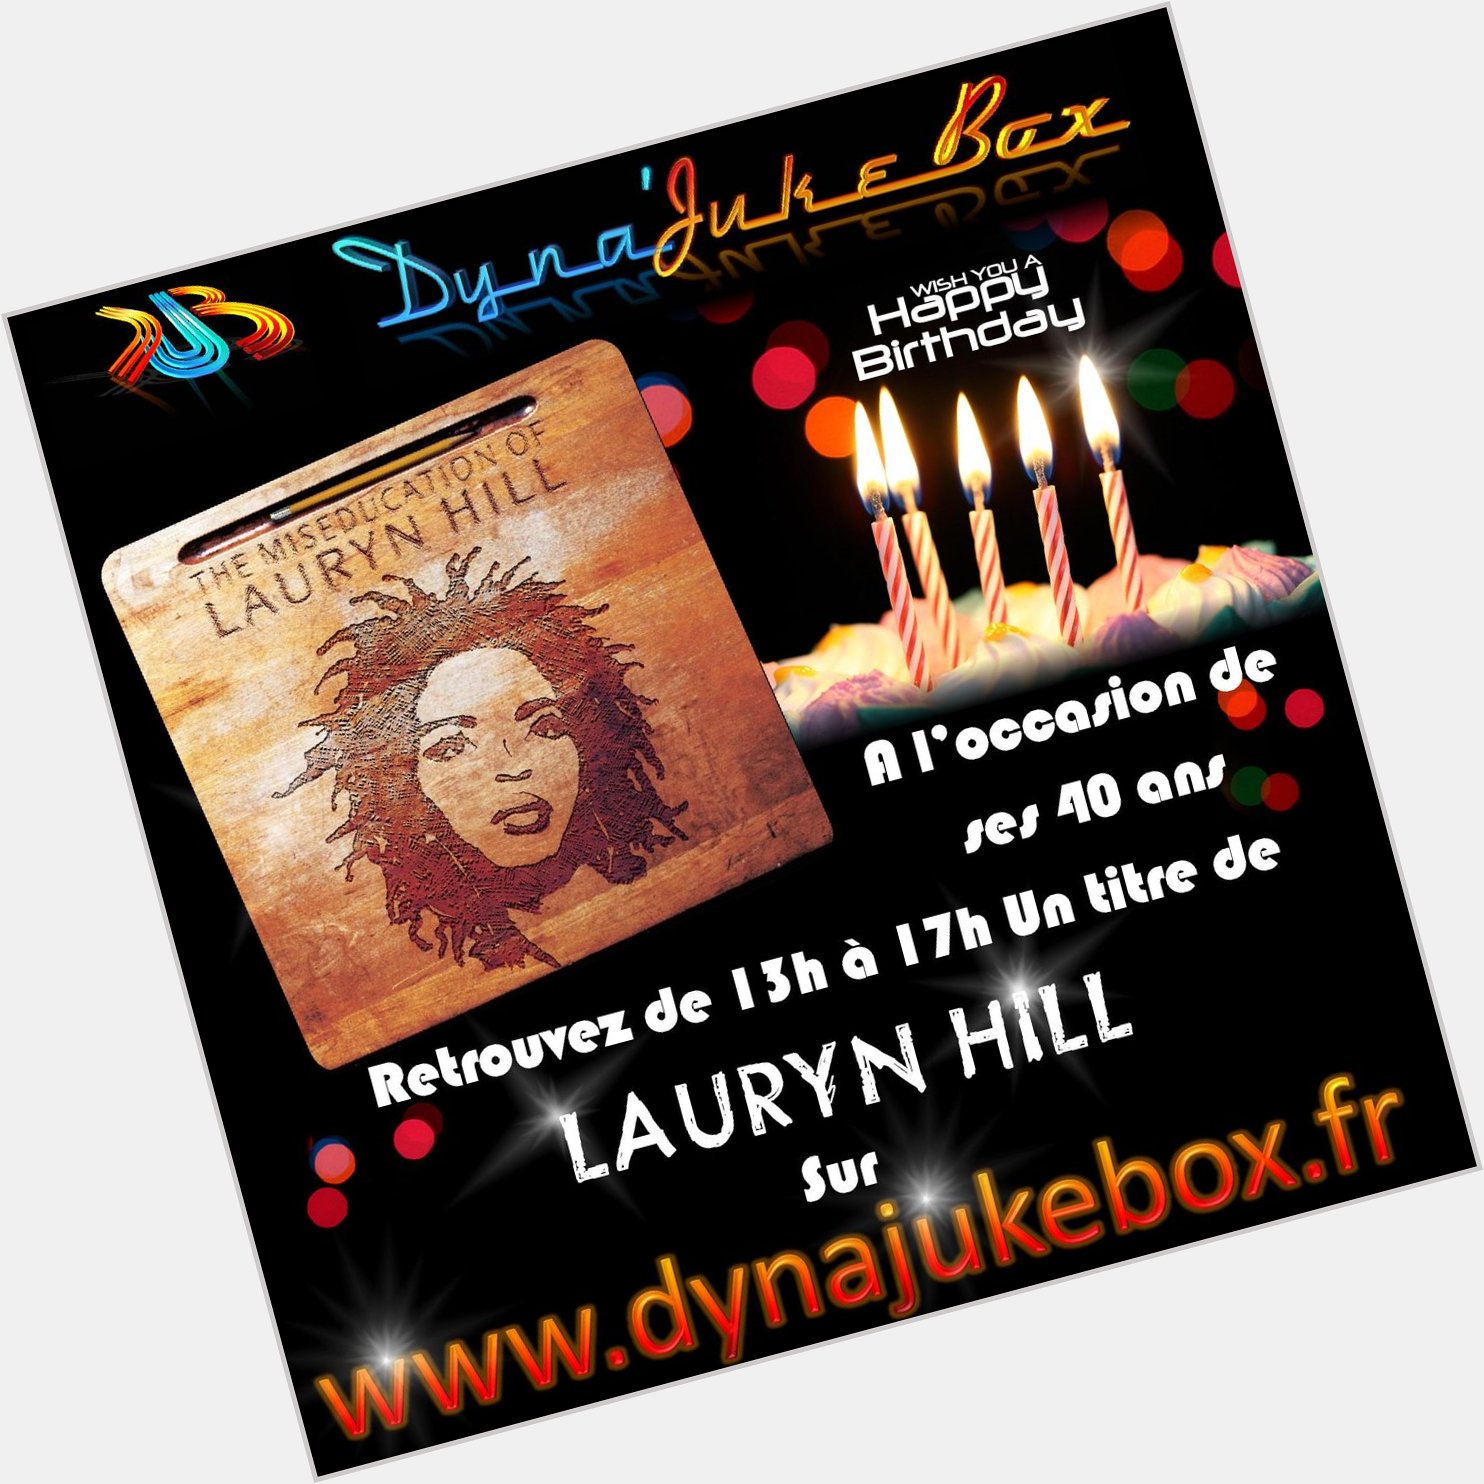 Happy Birthday to Lauryn Hill de  ; 1 titre toutes les heures de 13h à 17h  